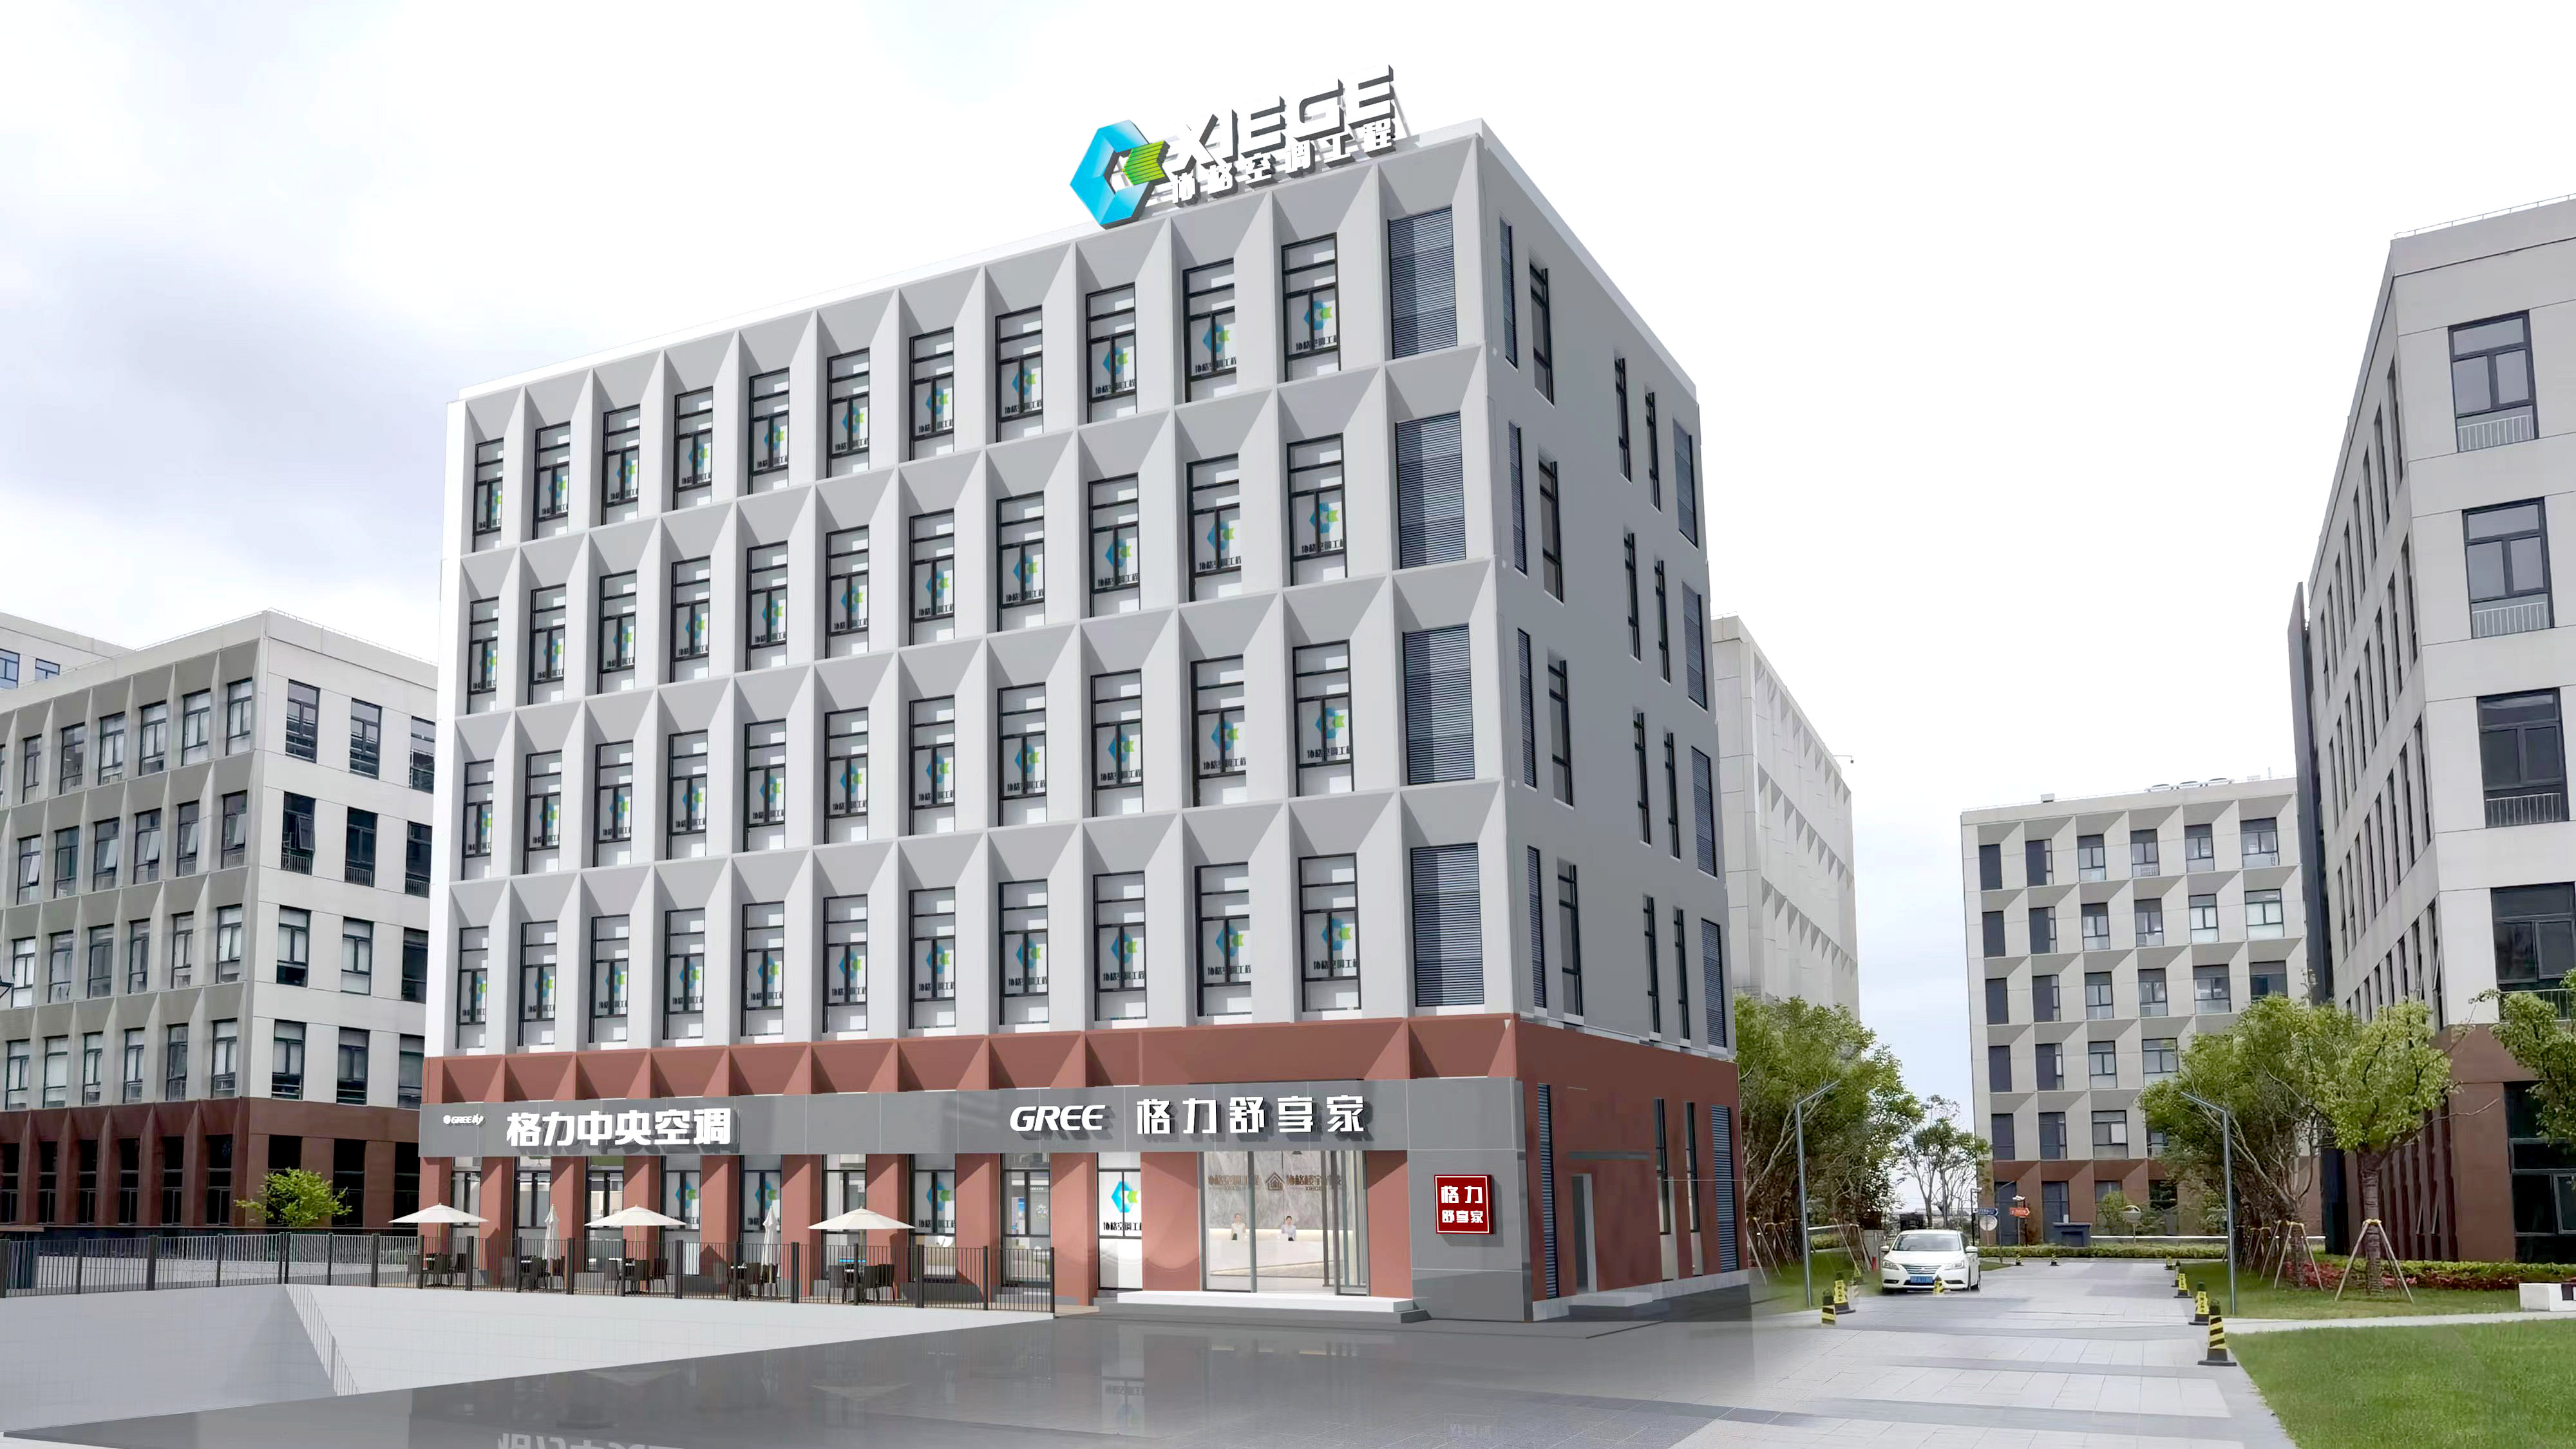 协格中心---格力上海地区的服务商和技术服务中心。